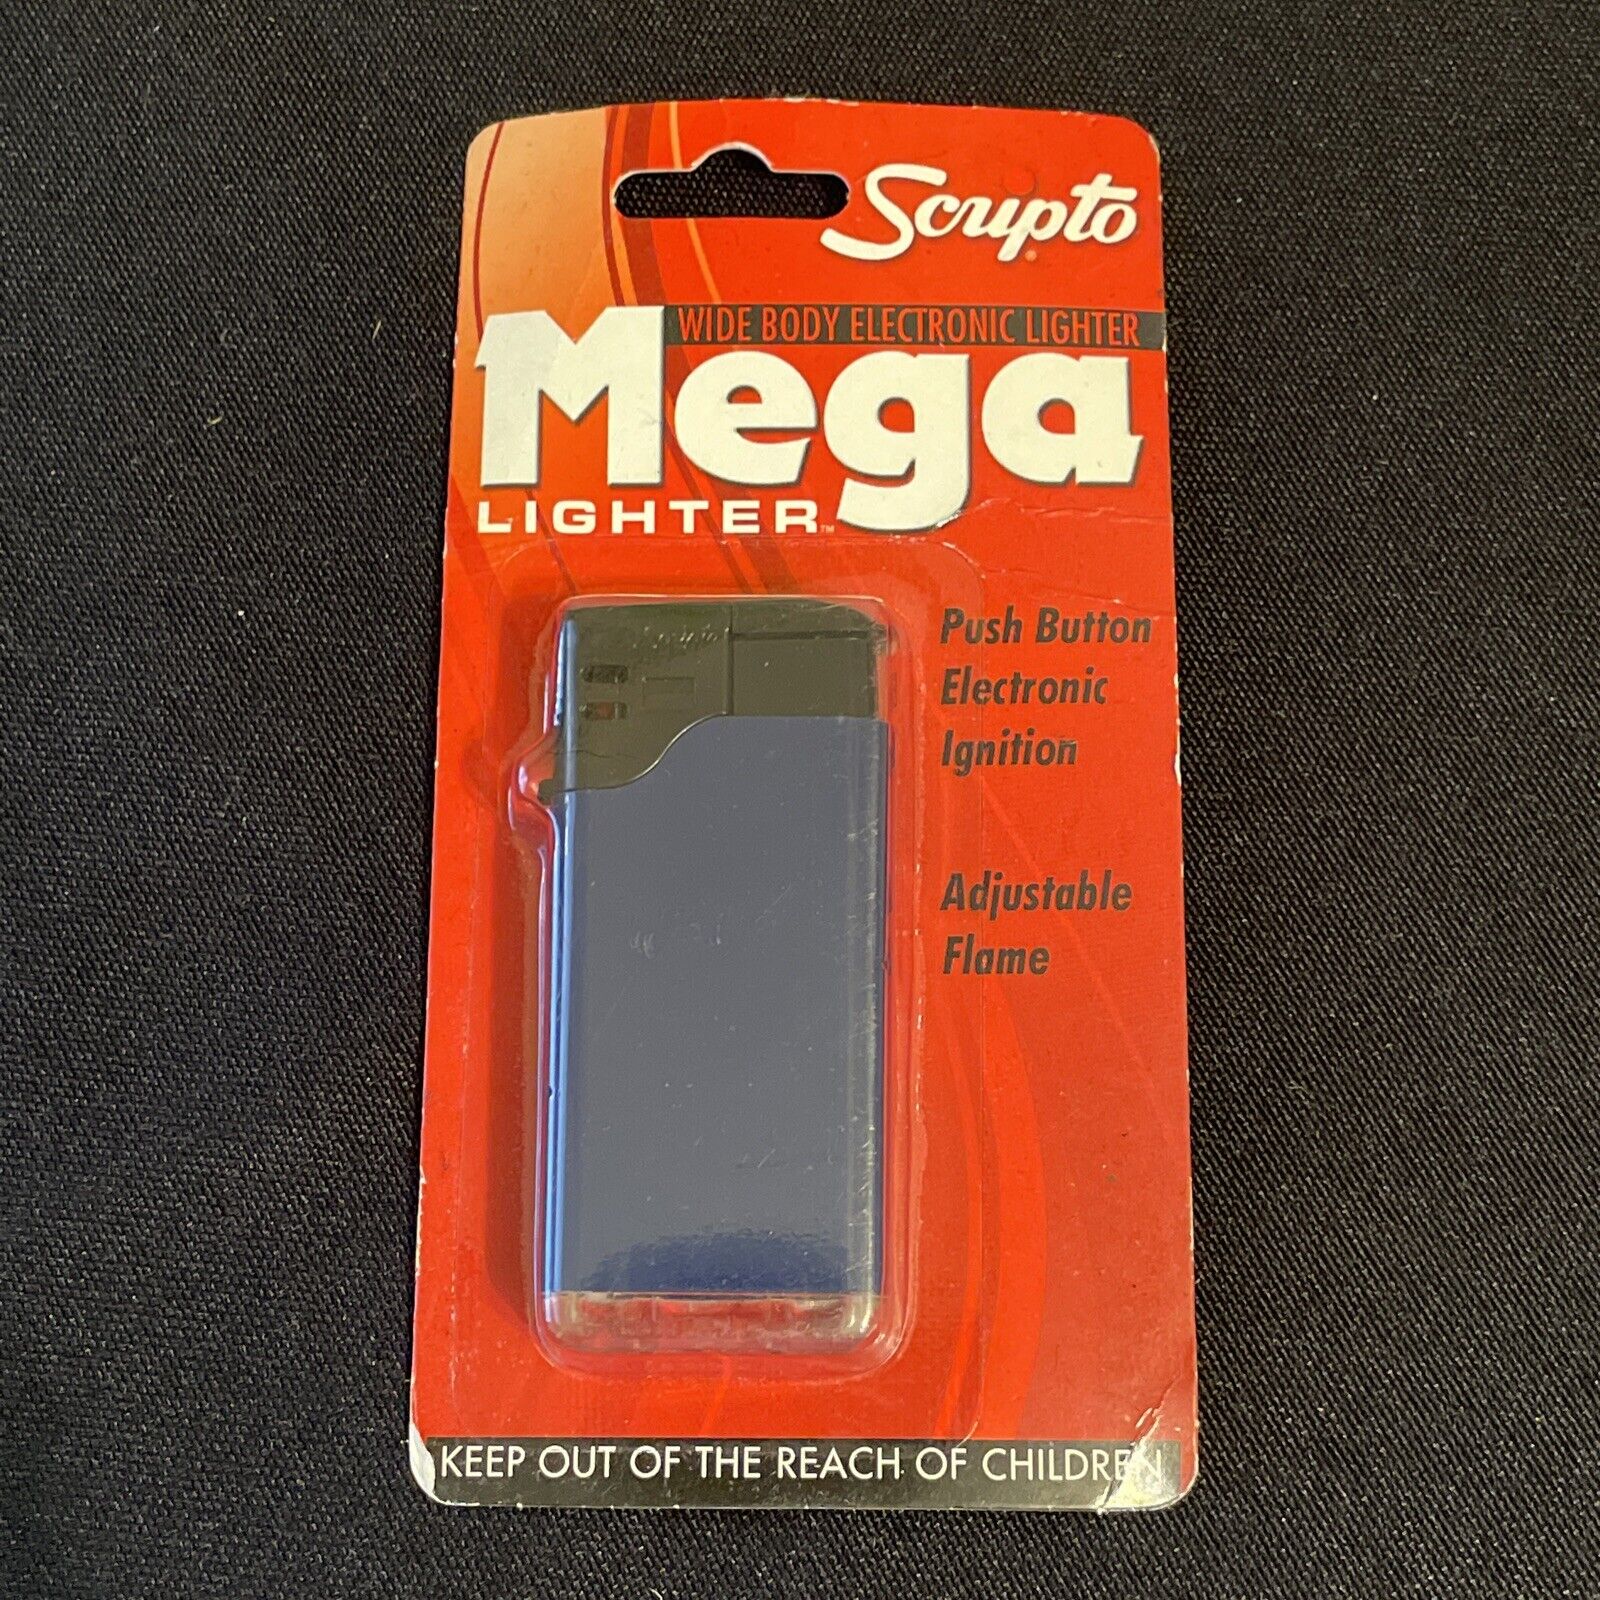 Scripto Mega Lighter Wide Body Electronic Lighter 